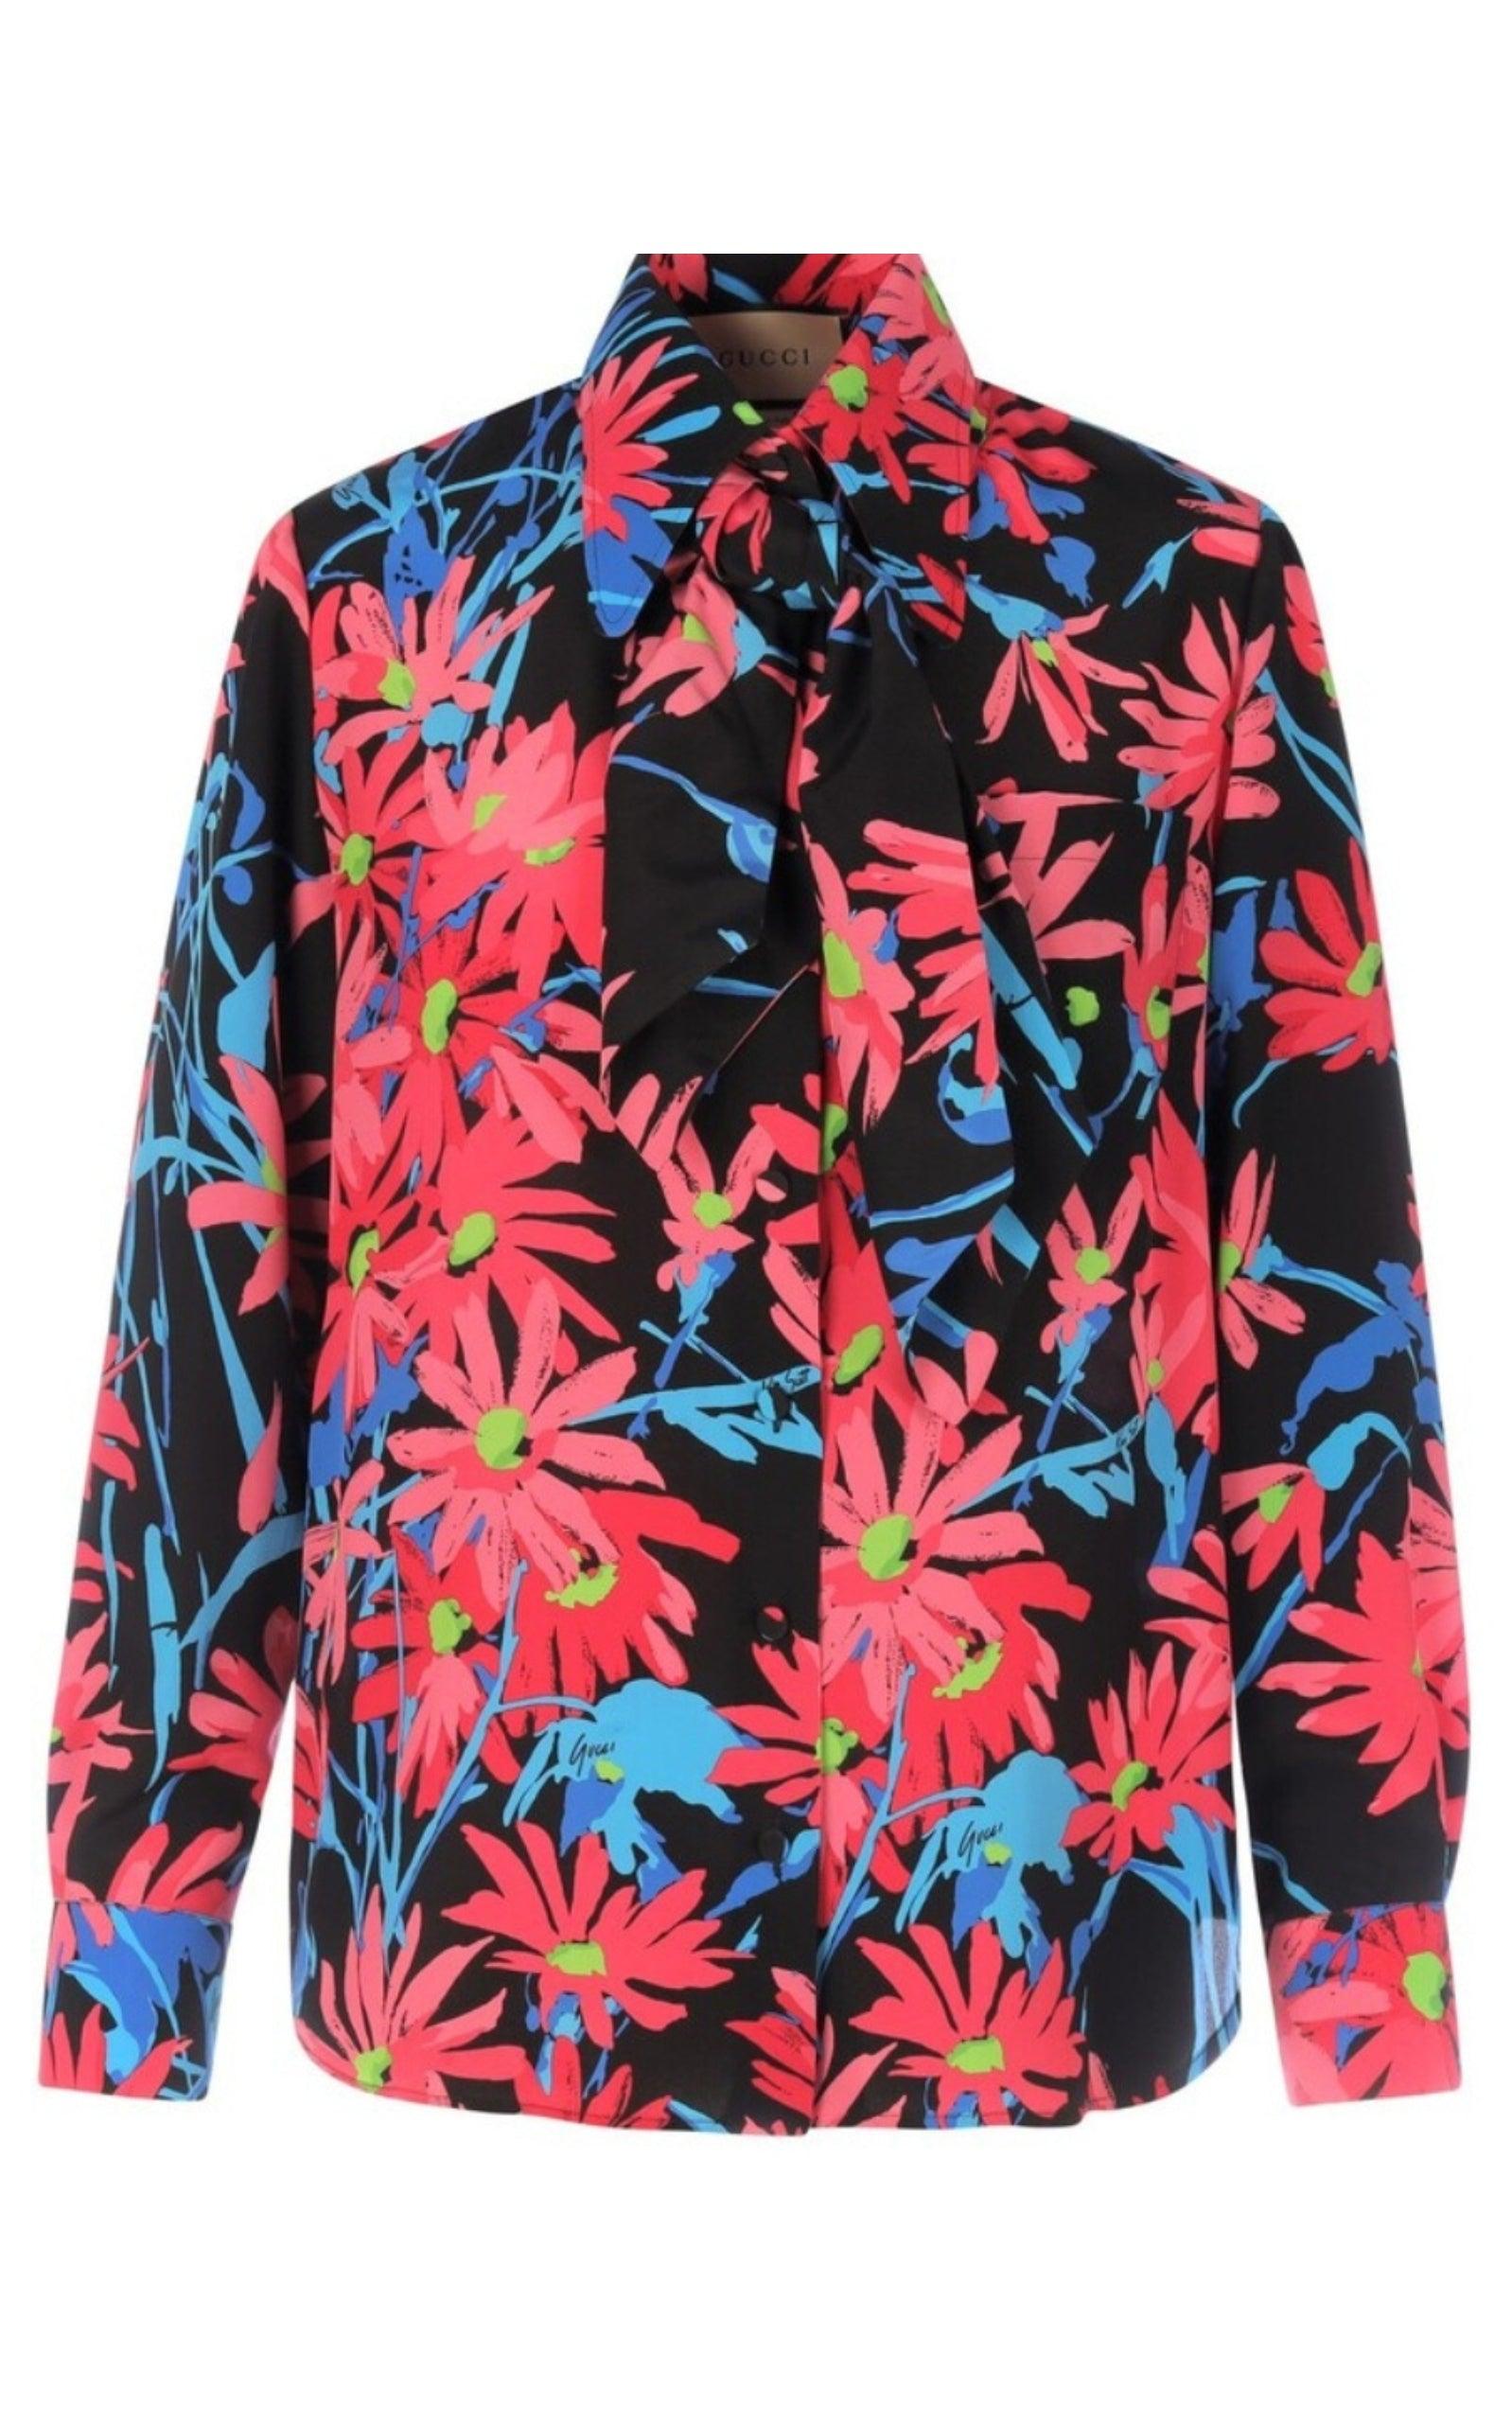 Gucci x Ken Scott Floral Print Silk Shirt